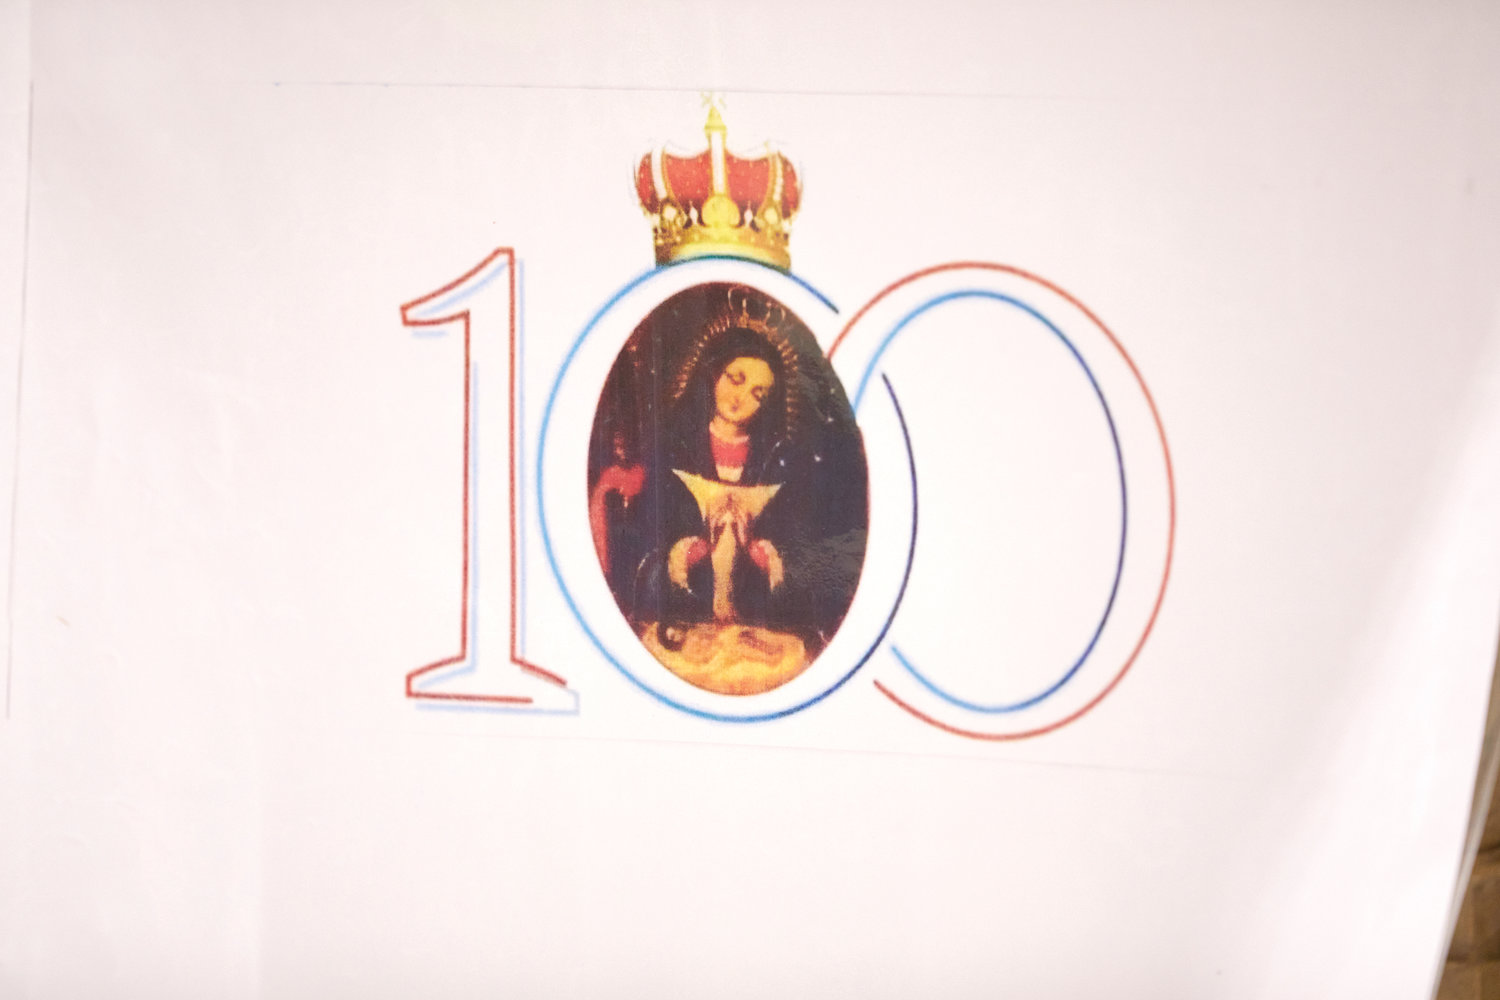 ALTAGRACIA 100—Imágenes de Nuestra Señora de la Altagracia, patrona de la República Dominicana, con el número 100 conmemoran el siglo desde la coronación canónica del retrato histórico de María en una Escena de Navidad.